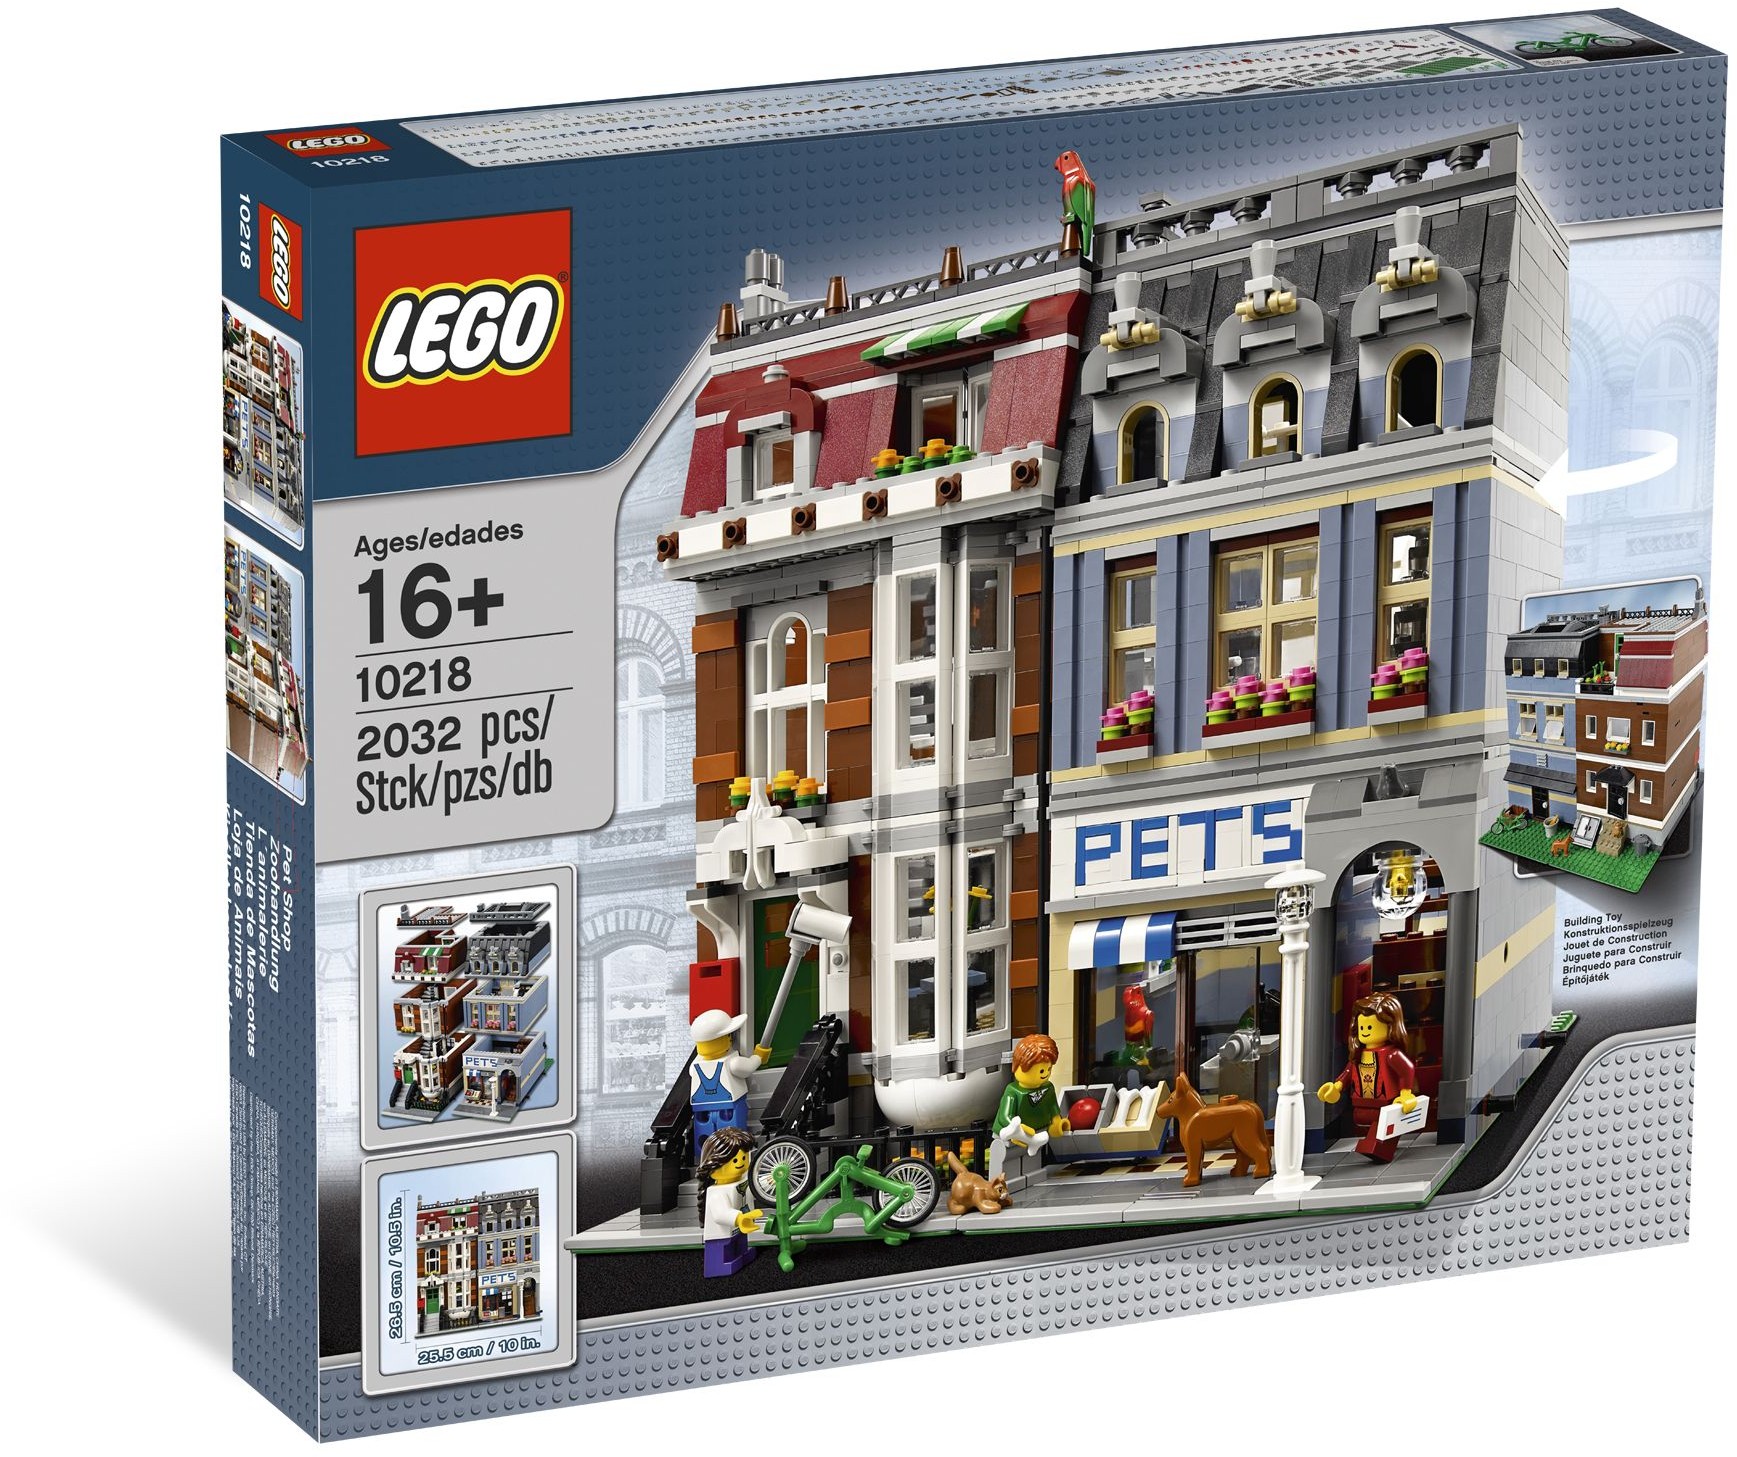 speelplaats Geavanceerde Schaduw Lego 10218 Pet Shop - Lego Creator set for sale best price